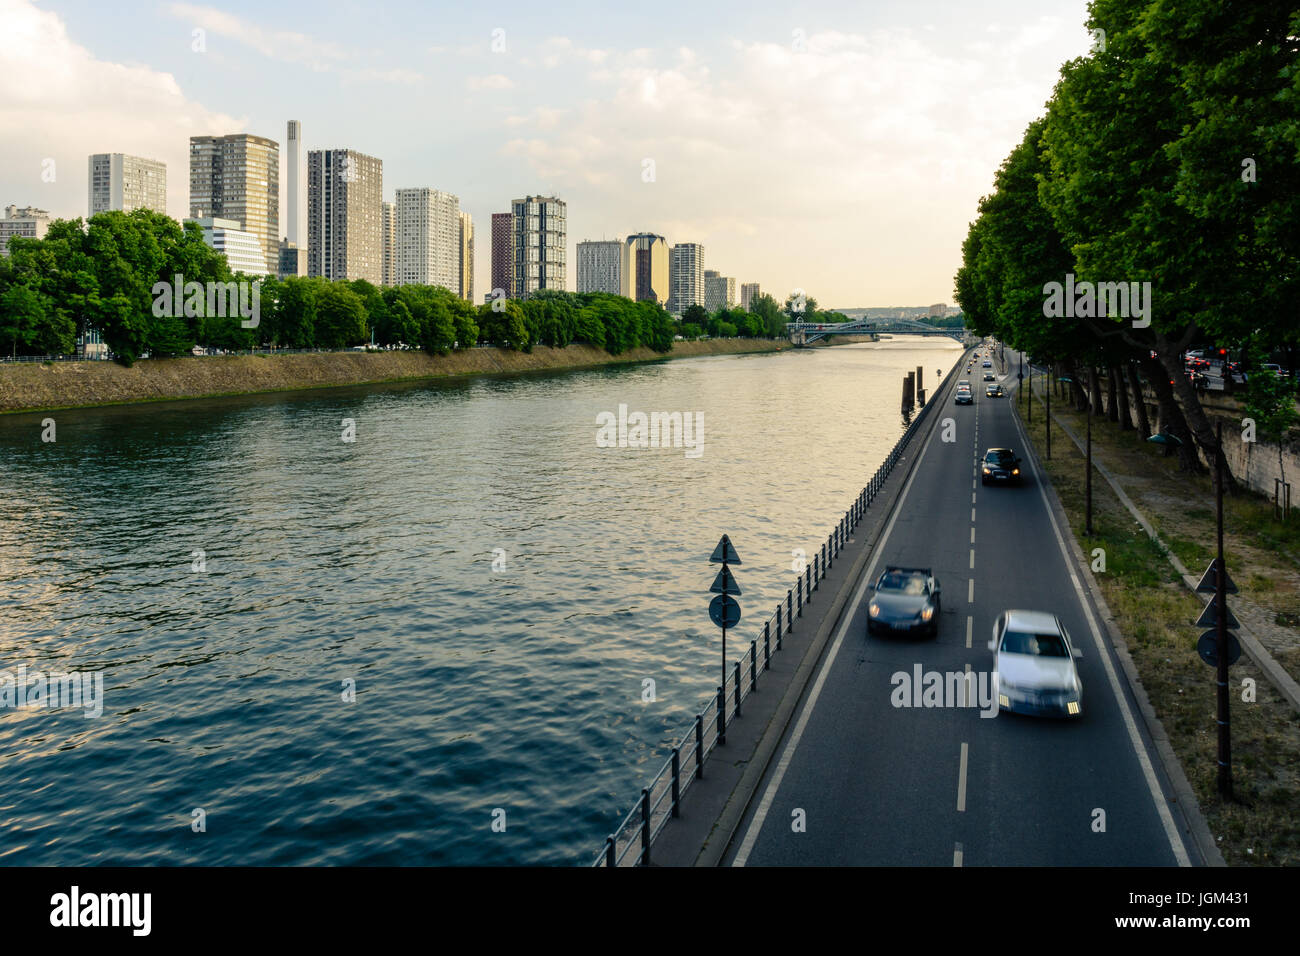 Le Front de Seine cityline dans le 15ème arrondissement de Paris avec la voie express Georges Pompidou et de la Seine au premier plan. Banque D'Images